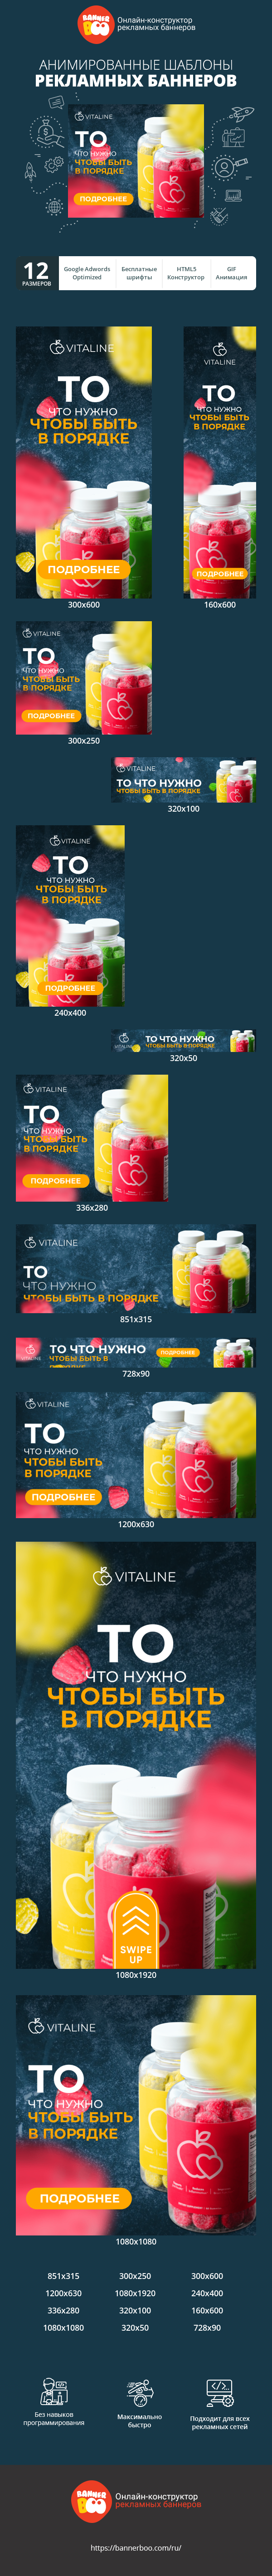 Шаблон рекламного баннера — То что нужно чтобы быть в порядке — витамины